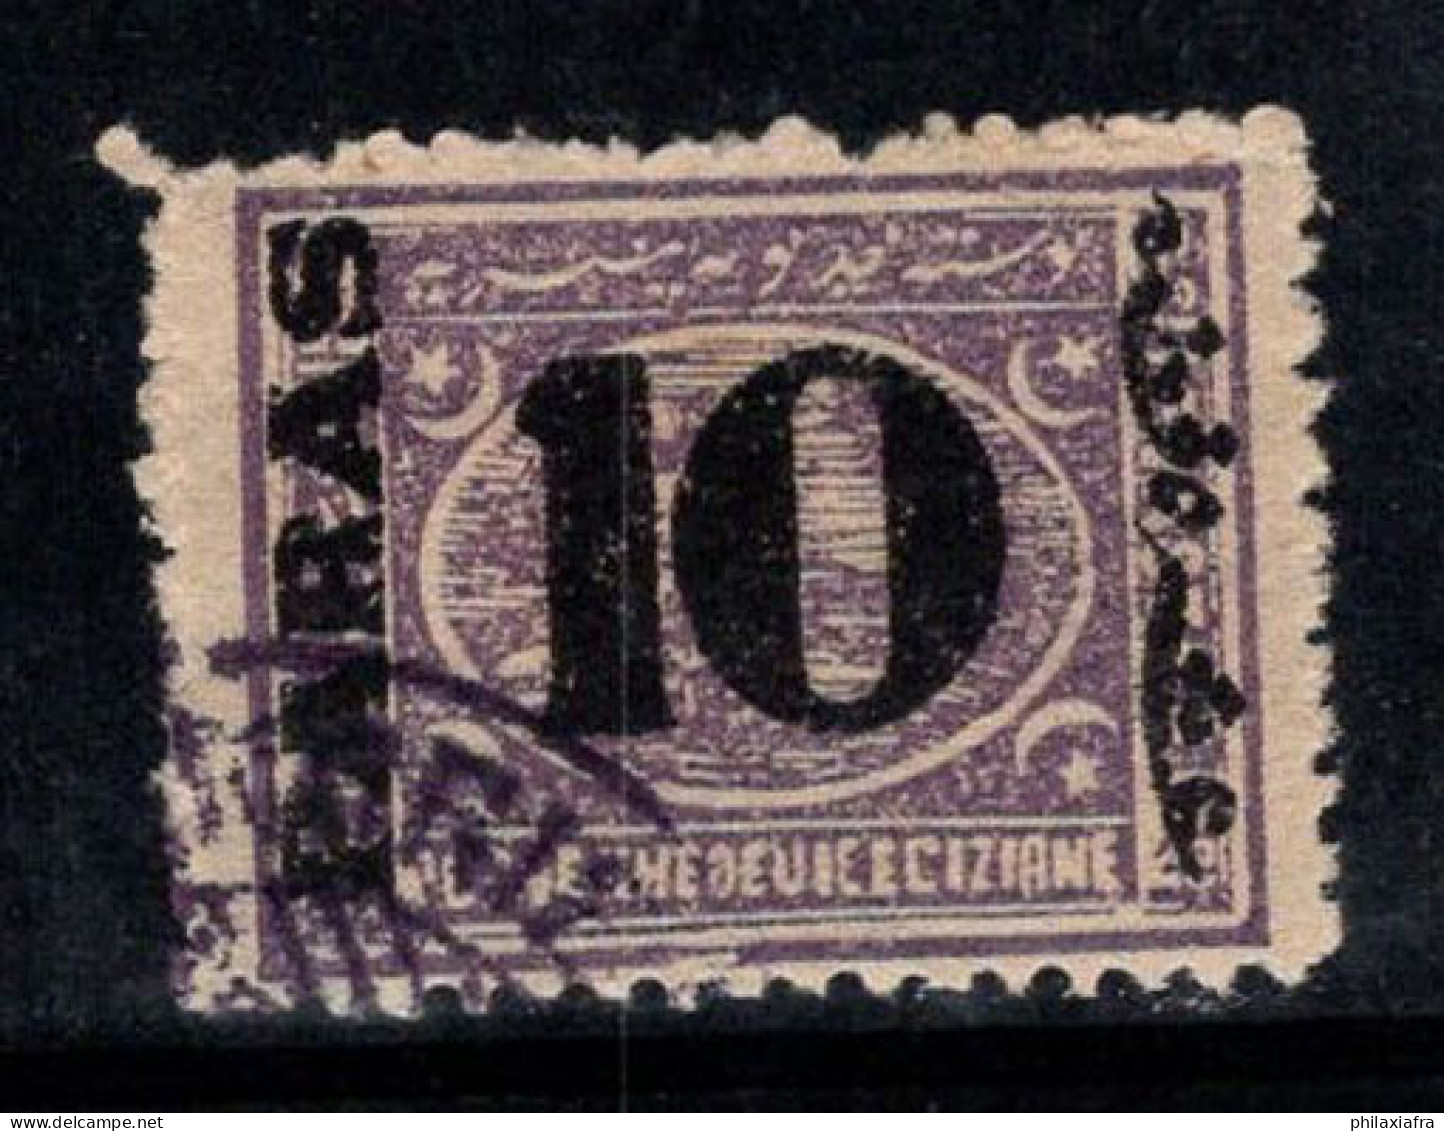 Égypte 1879 Mi. 22 Oblitéré 100% 10 Pa Surimprimé - 1866-1914 Khedivato Di Egitto